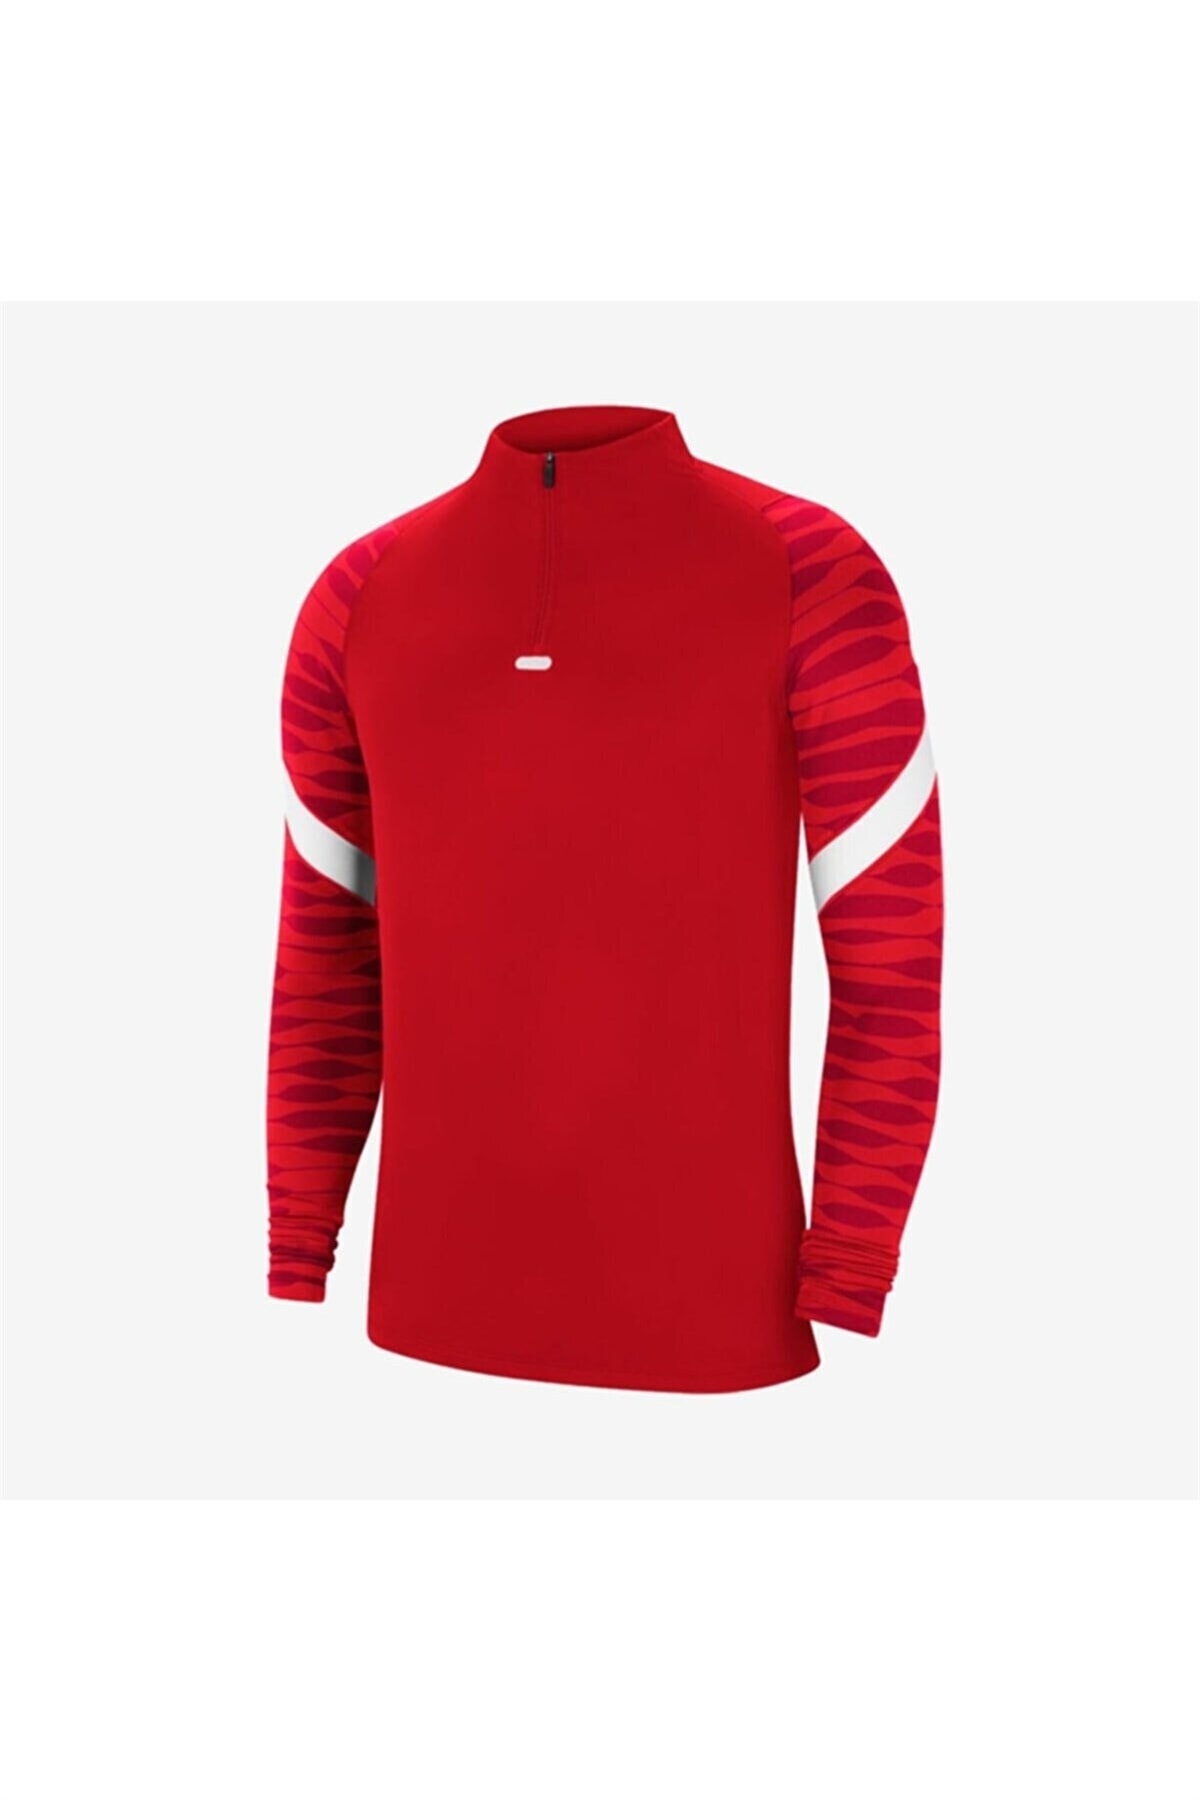 Nike Cw5858-657 Strke21 Erkek Sweatshirt